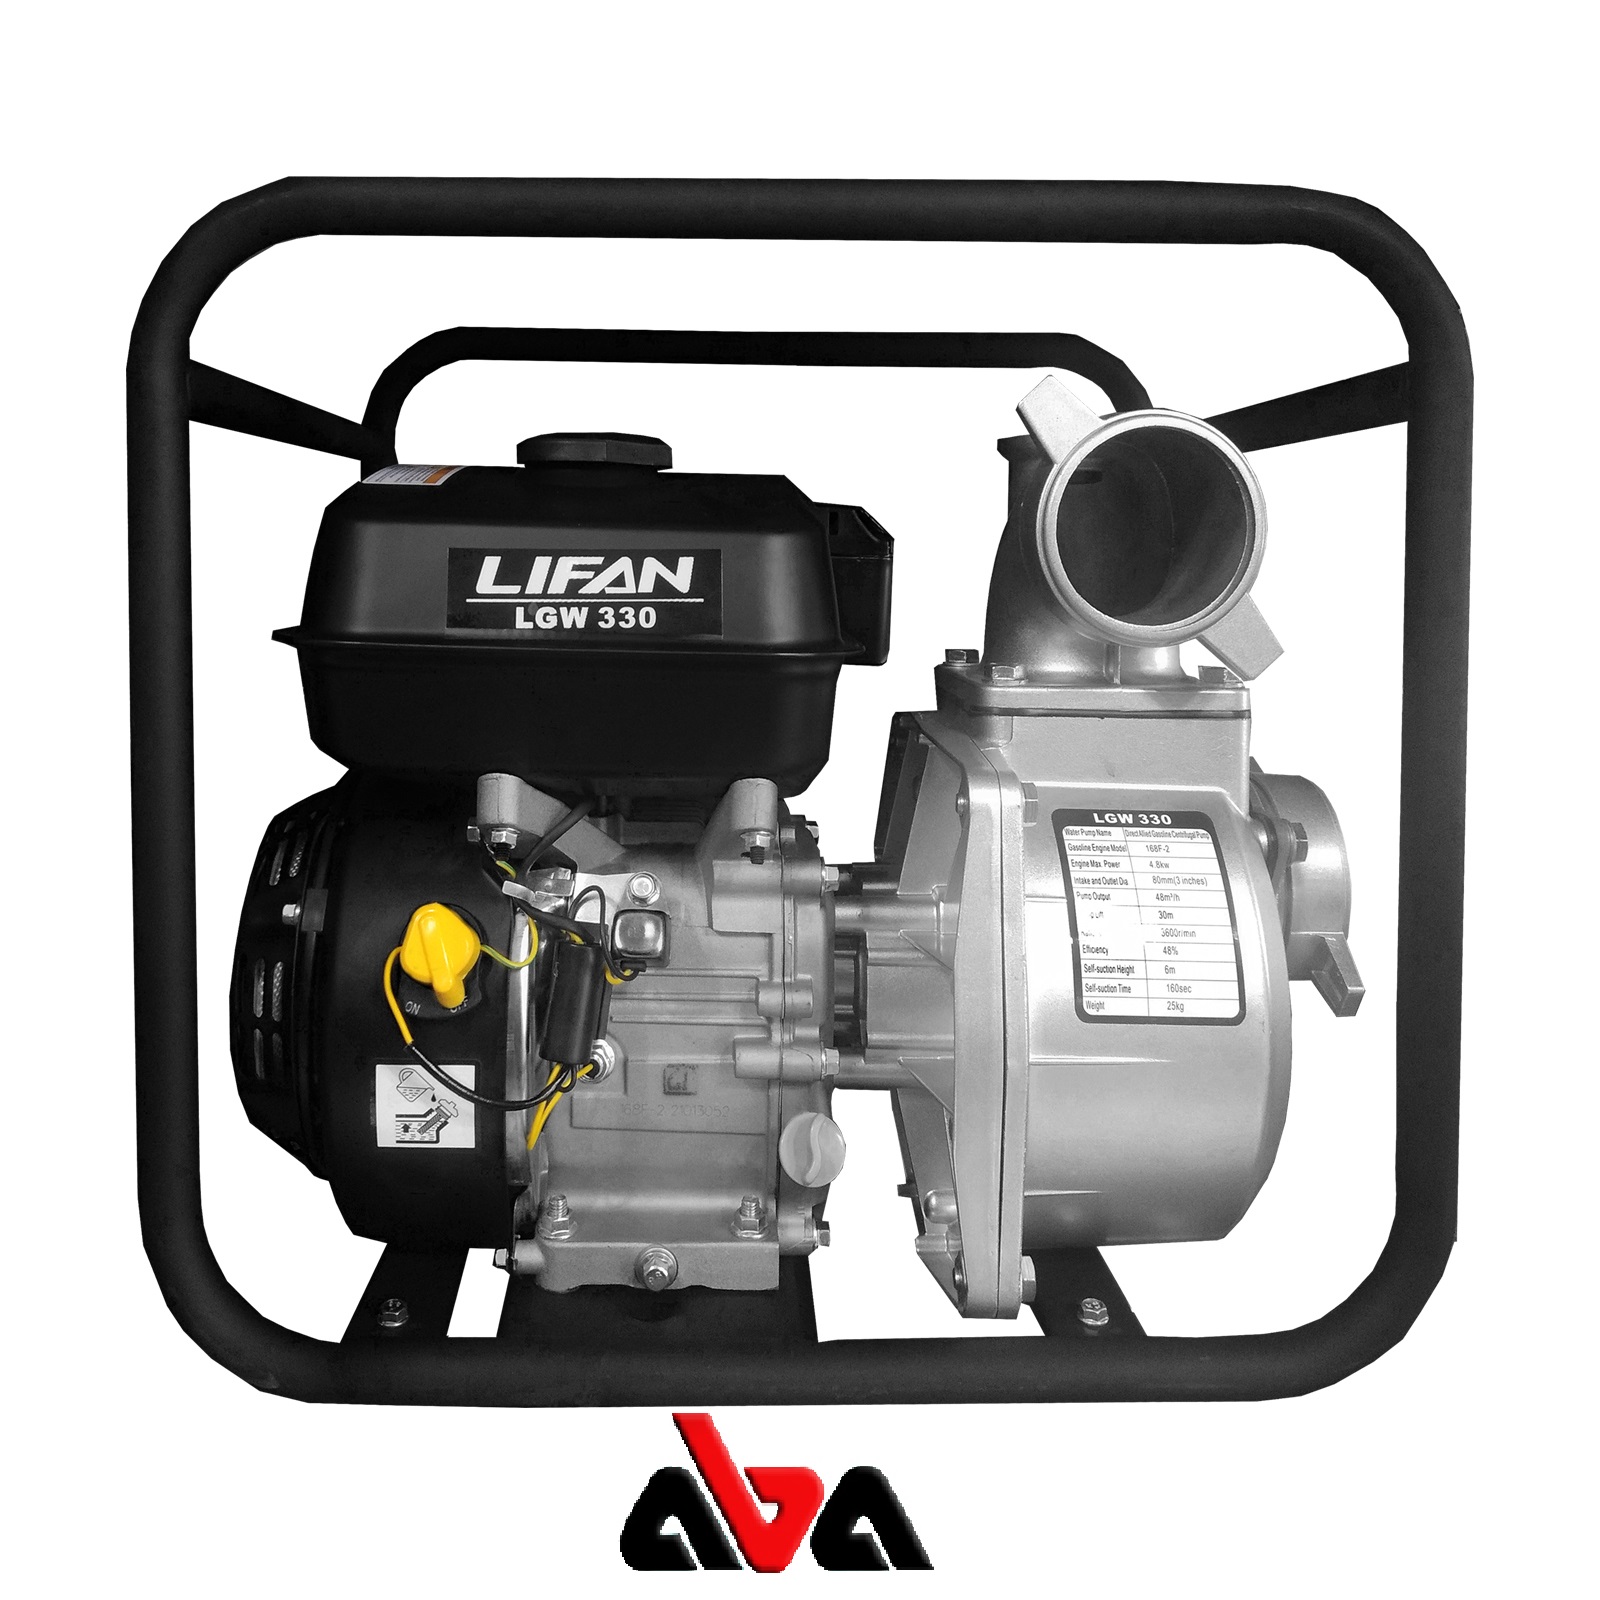 مشخصات فنی موتور پمپ لیفان 3 اینچ مدل LGW 330